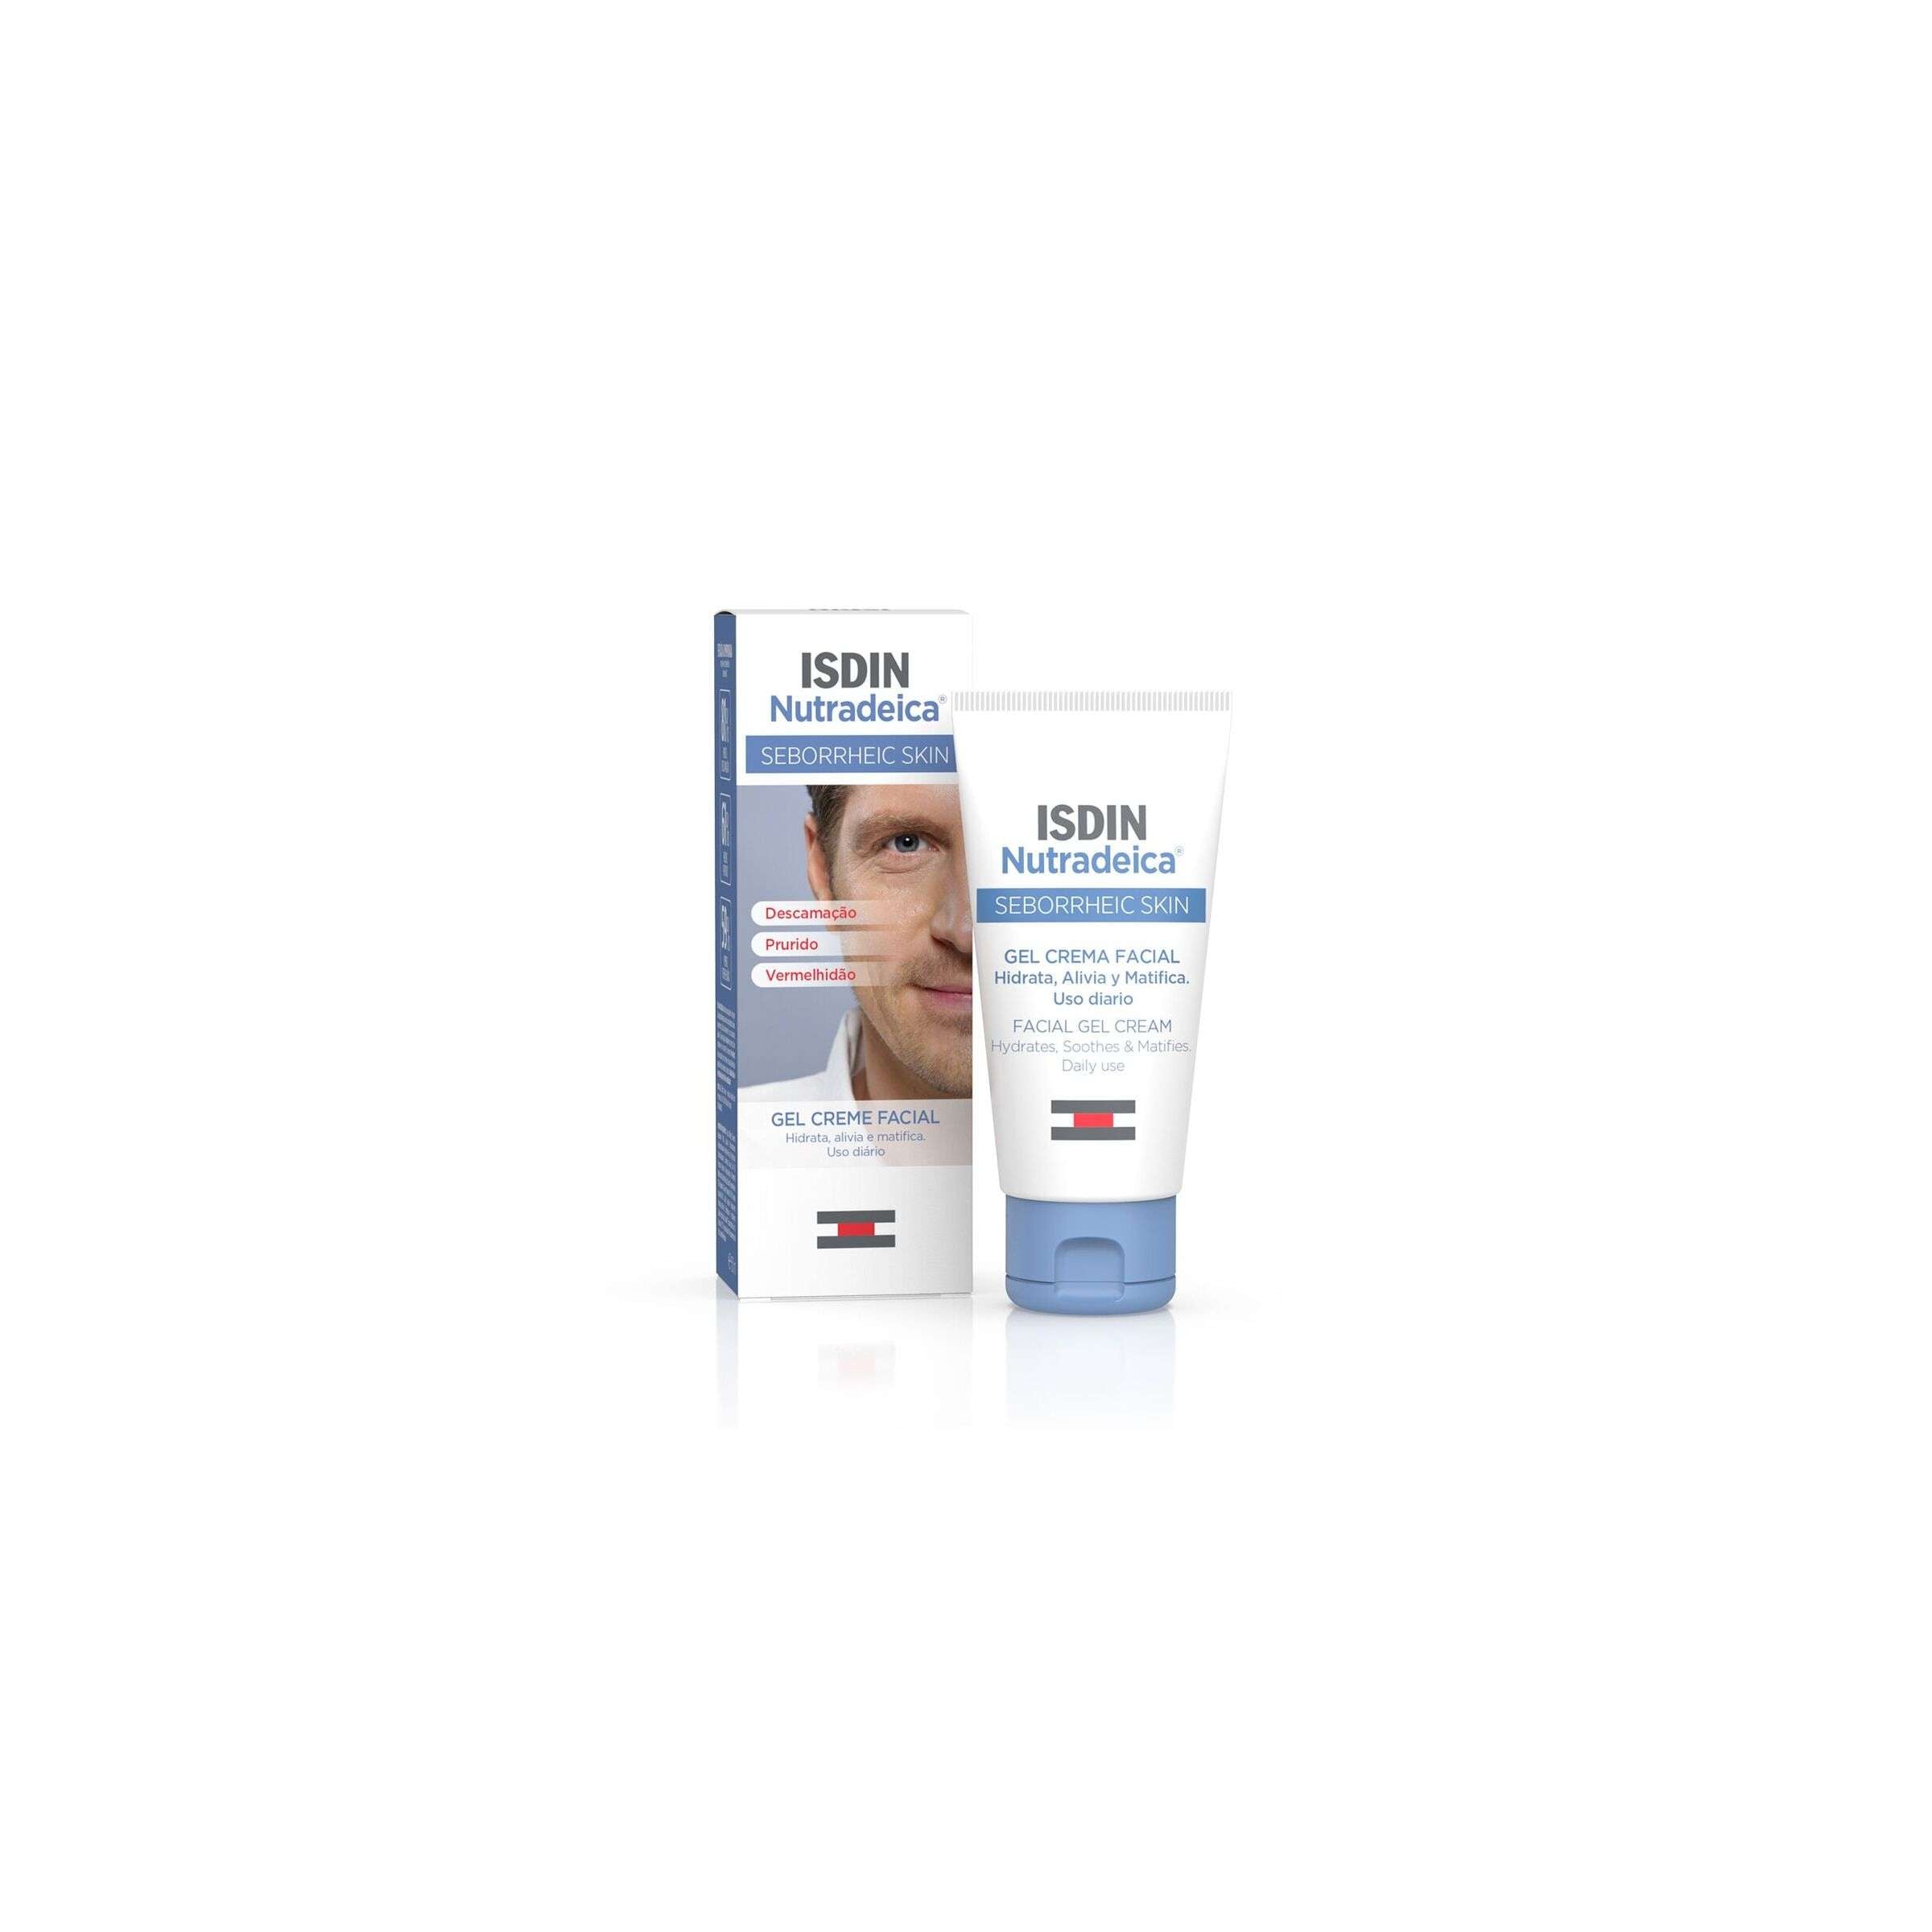 ISDIN Nutradeica Facial 50ML- Gel Creme Facial para pele com tendência seborreica 